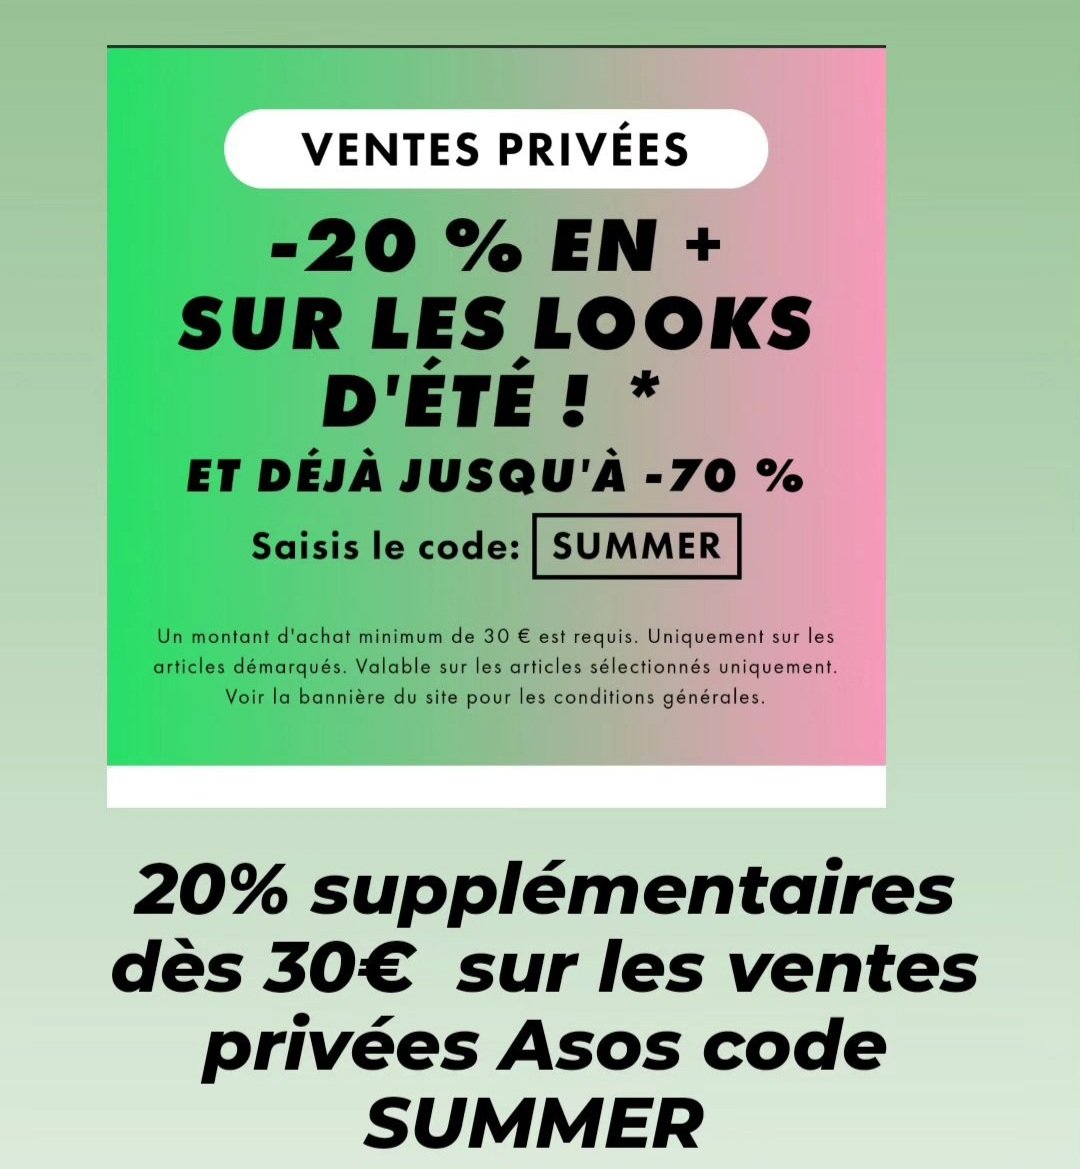 #bonsplans 
20% supplémentaires dès 30€ sur les ventes privées Asos code SUMMER
Lien↪ bit.ly/Asosfr